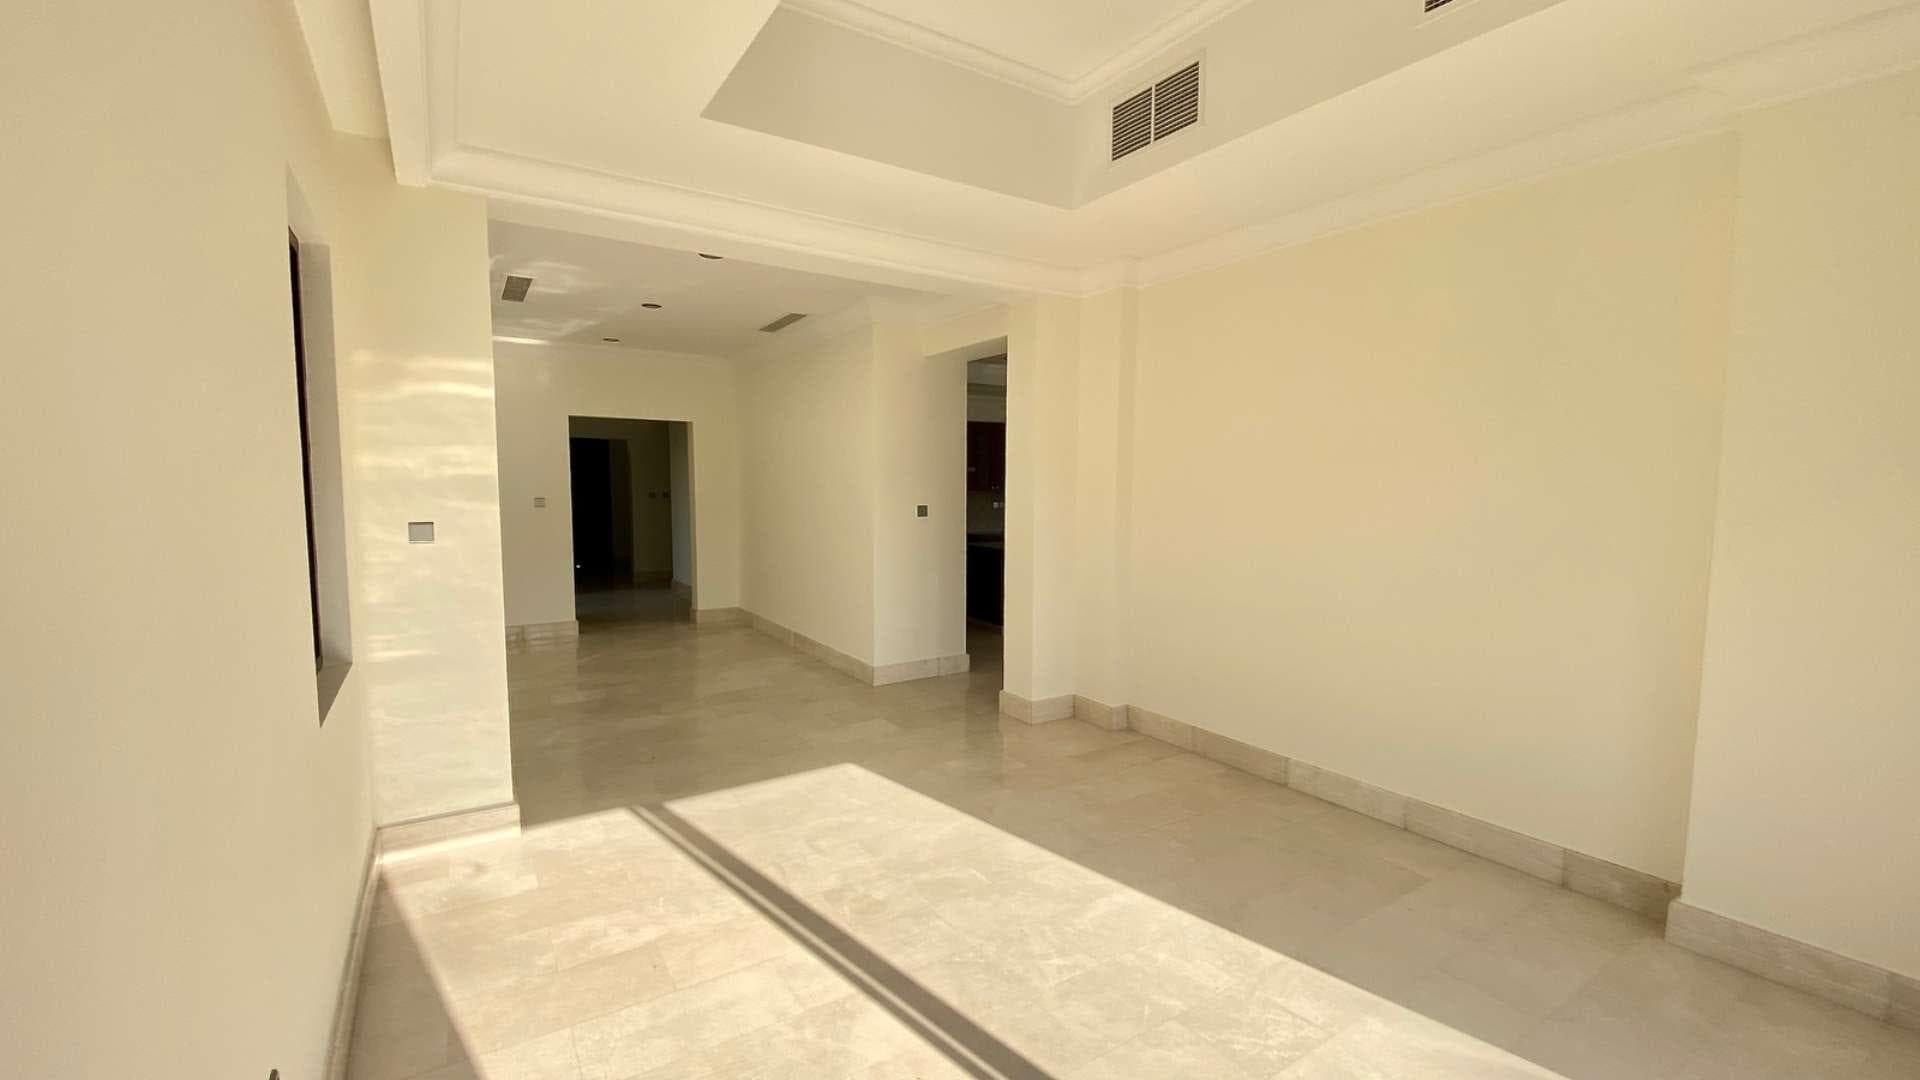 6 Bedroom Villa For Sale Aseel Lp37478 1c096624d4b7c200.jpg